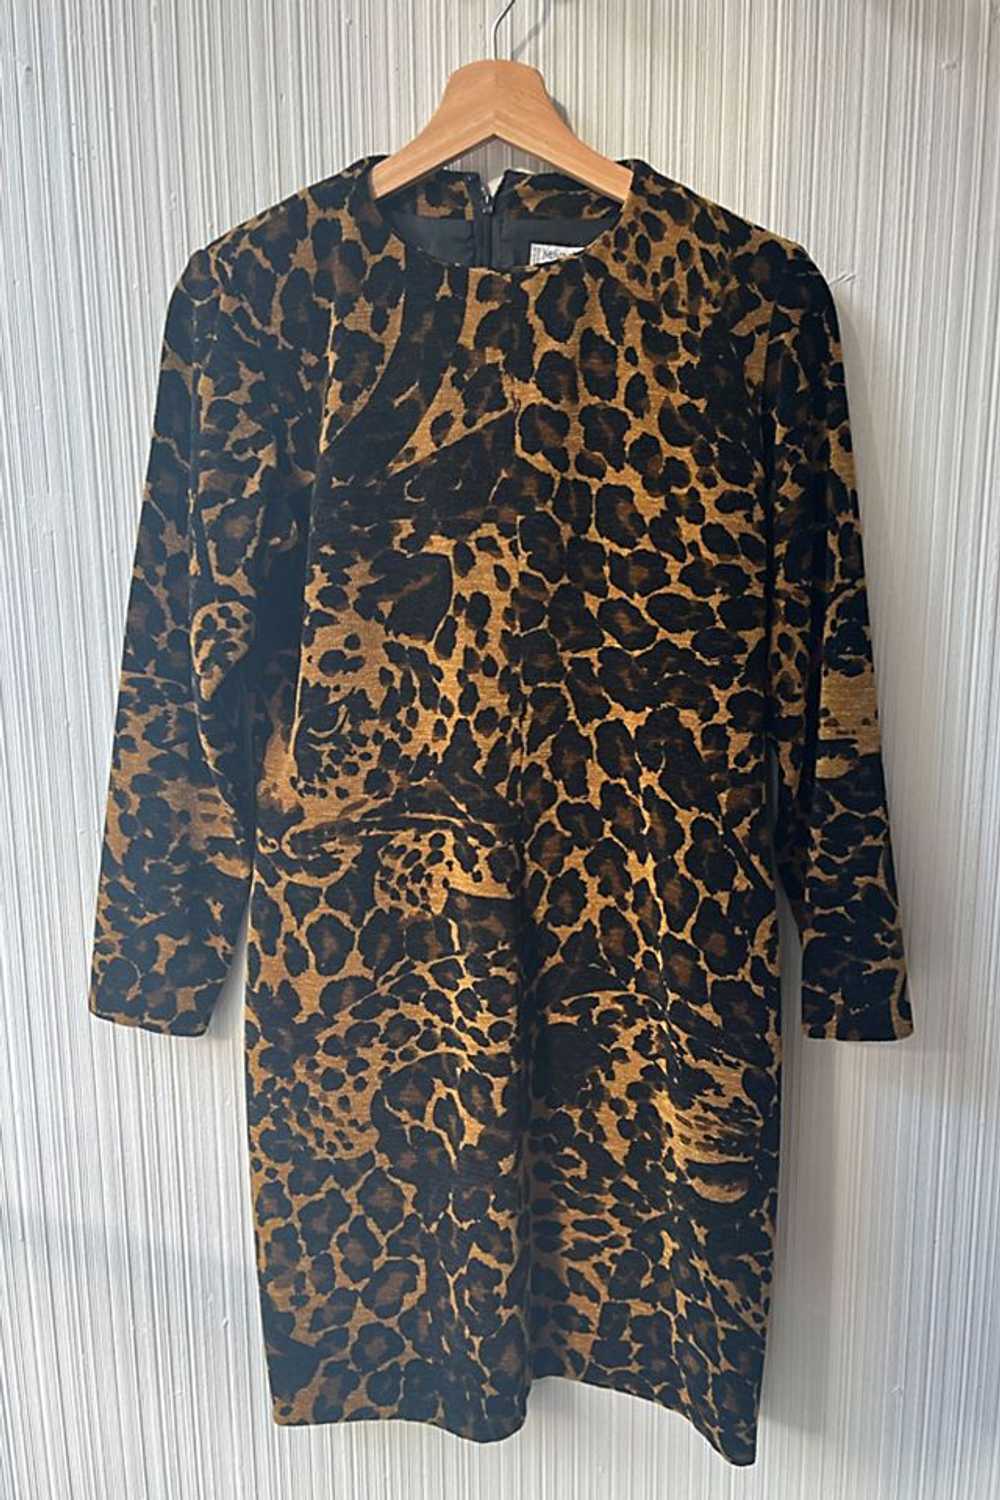 Yves Saint Laurent Animal Print Chenille Dress Se… - image 1